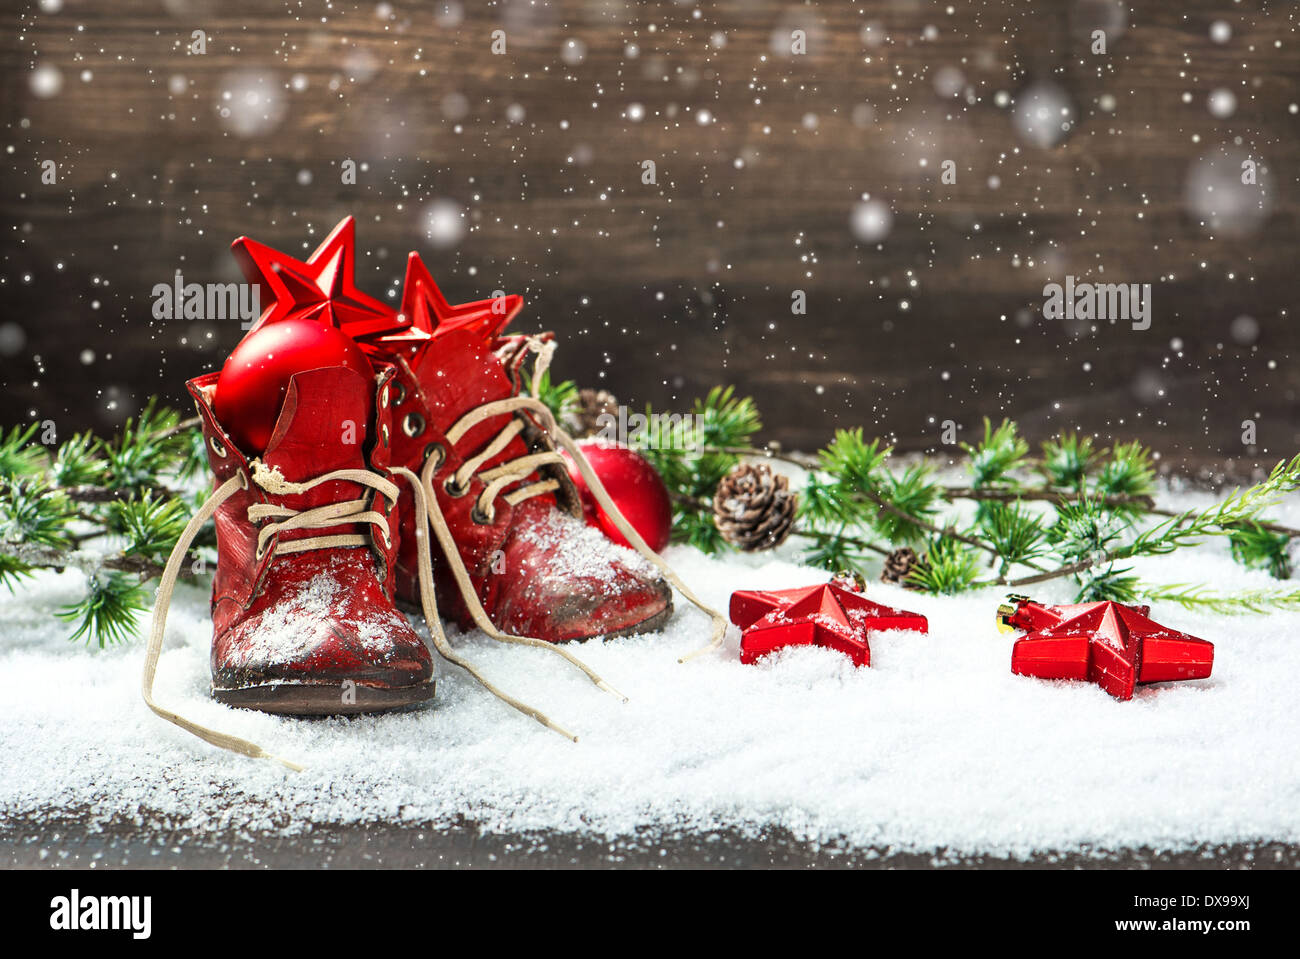 Vintage Weihnachten Dekoration rote Kugeln, Sterne und Antik baby-Schuhe auf hölzernen Hintergrund. Retro-Stil Bild mit Schneeflocken Stockfoto